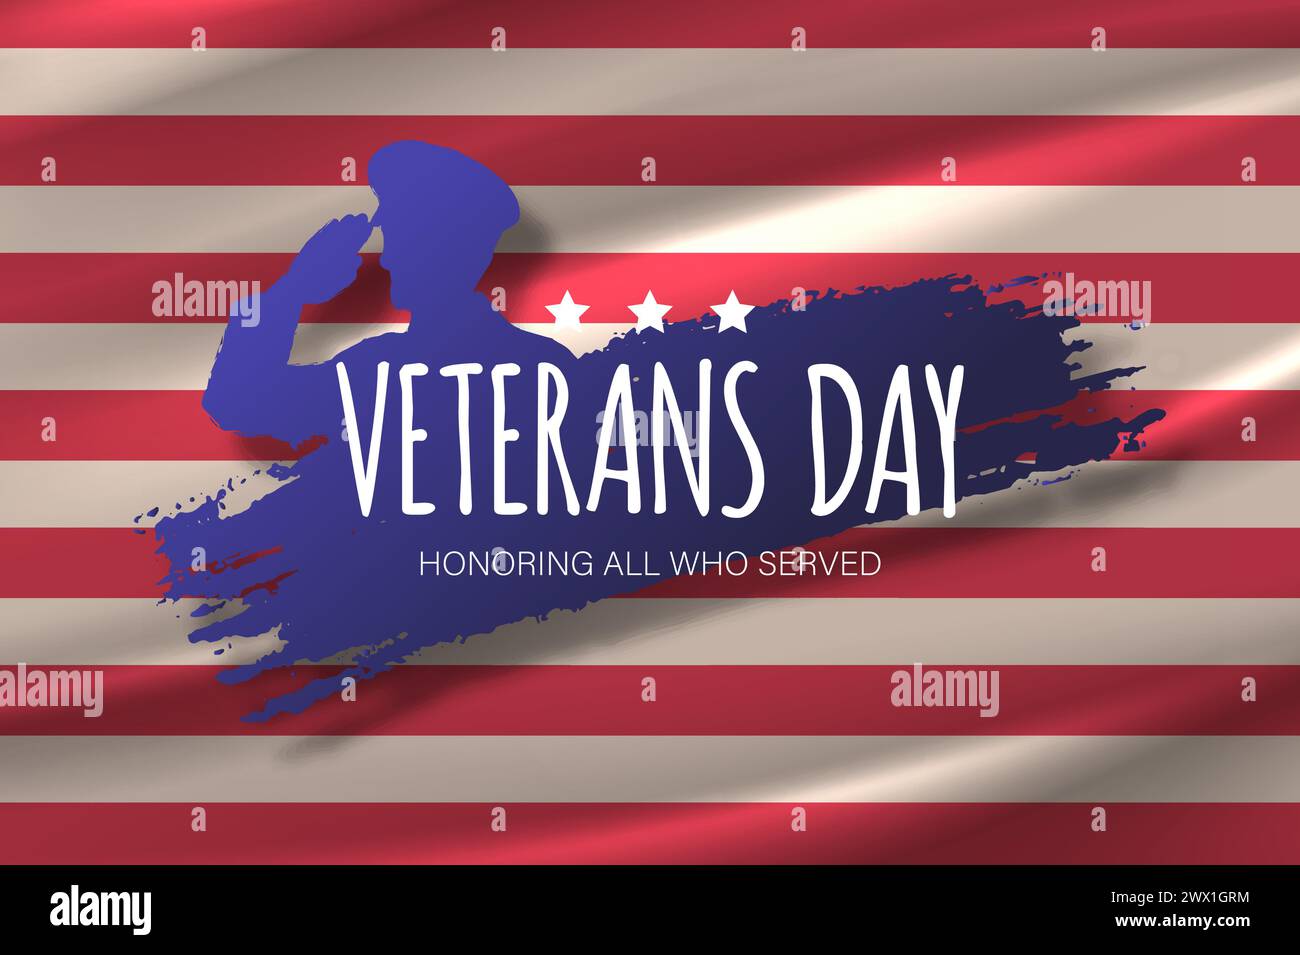 Veterans Day Template Design mit US Flagge und Soldat für Poster und Banner Vektor Illustration. Zu Ehren Aller, Die Gedient Haben. November Stock Vektor